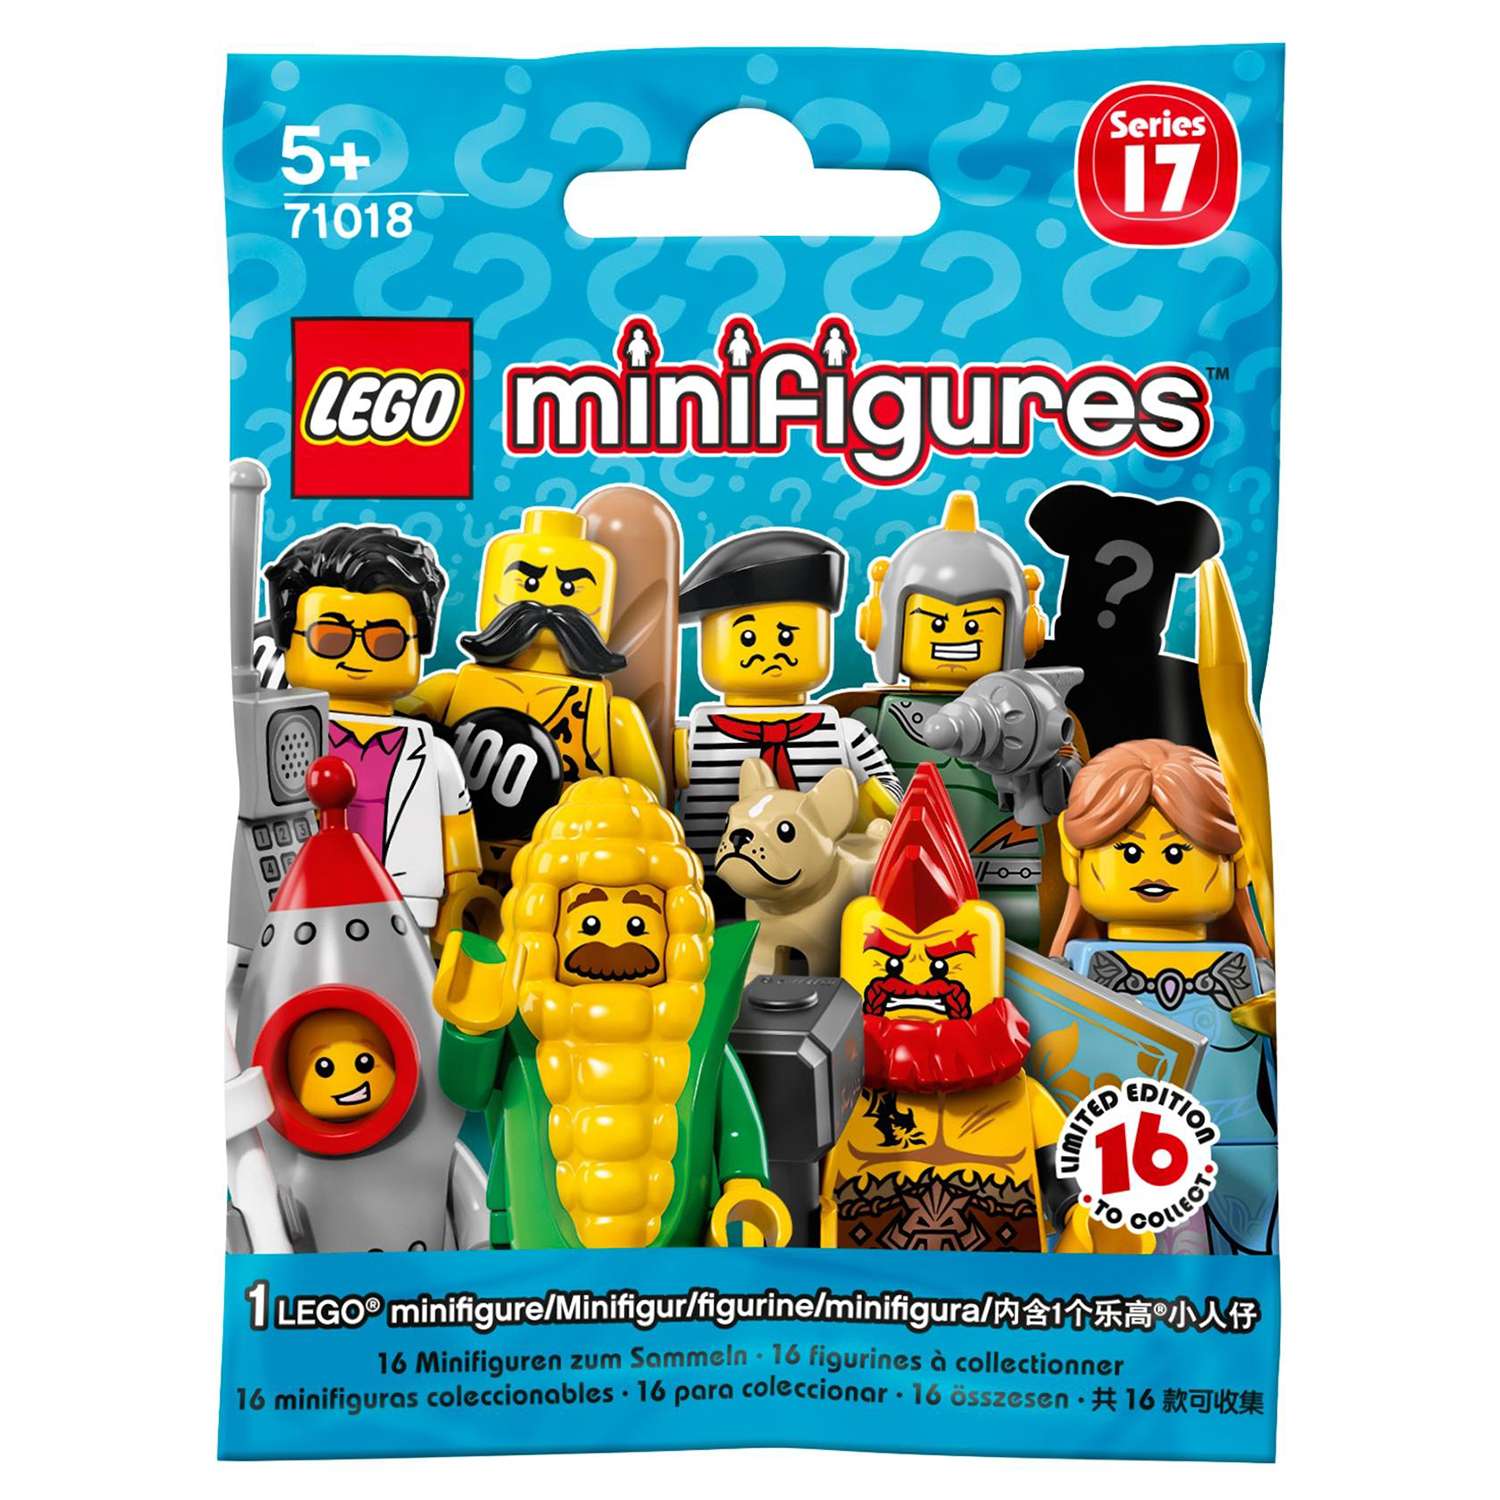 Конструктор LEGO Minifigures Минифигурки LEGO®, серия 17 (71018) в ассортименте - фото 3